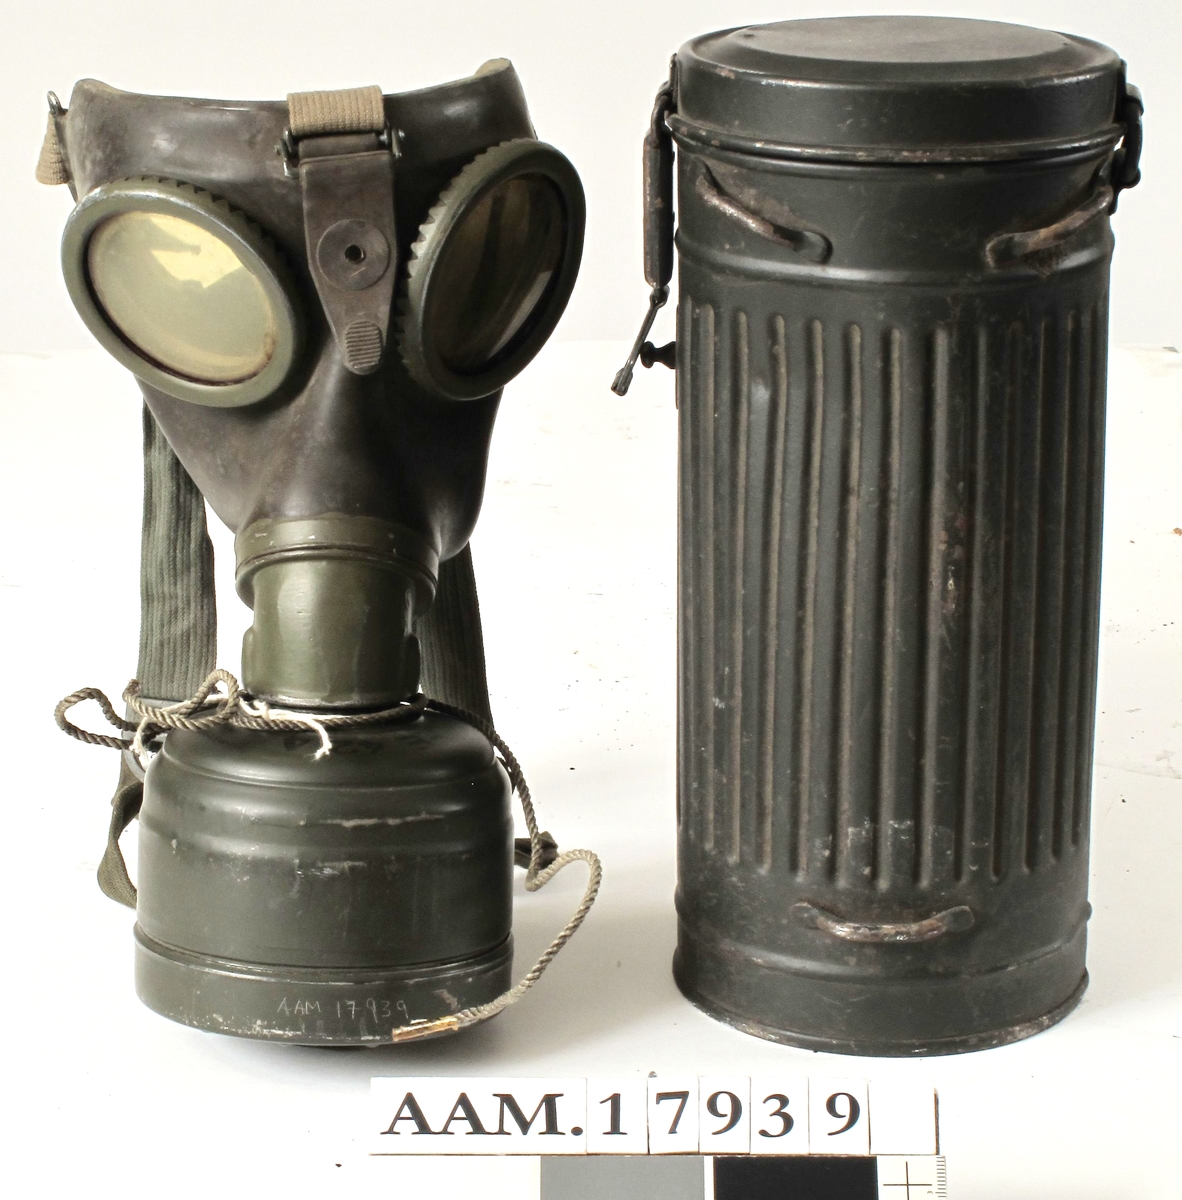 Gassmaske, tysk, fra krigen 1940-45. Sylinder av   jernblikk,  malt  mørk grønngrå.  
Rifllet beholder med flatt lokk, i bunnen  ligger gassmasken, over denne en beholder,  malt med sort : byd Fe, Fe 424, tyske våpen og WA. A.533.